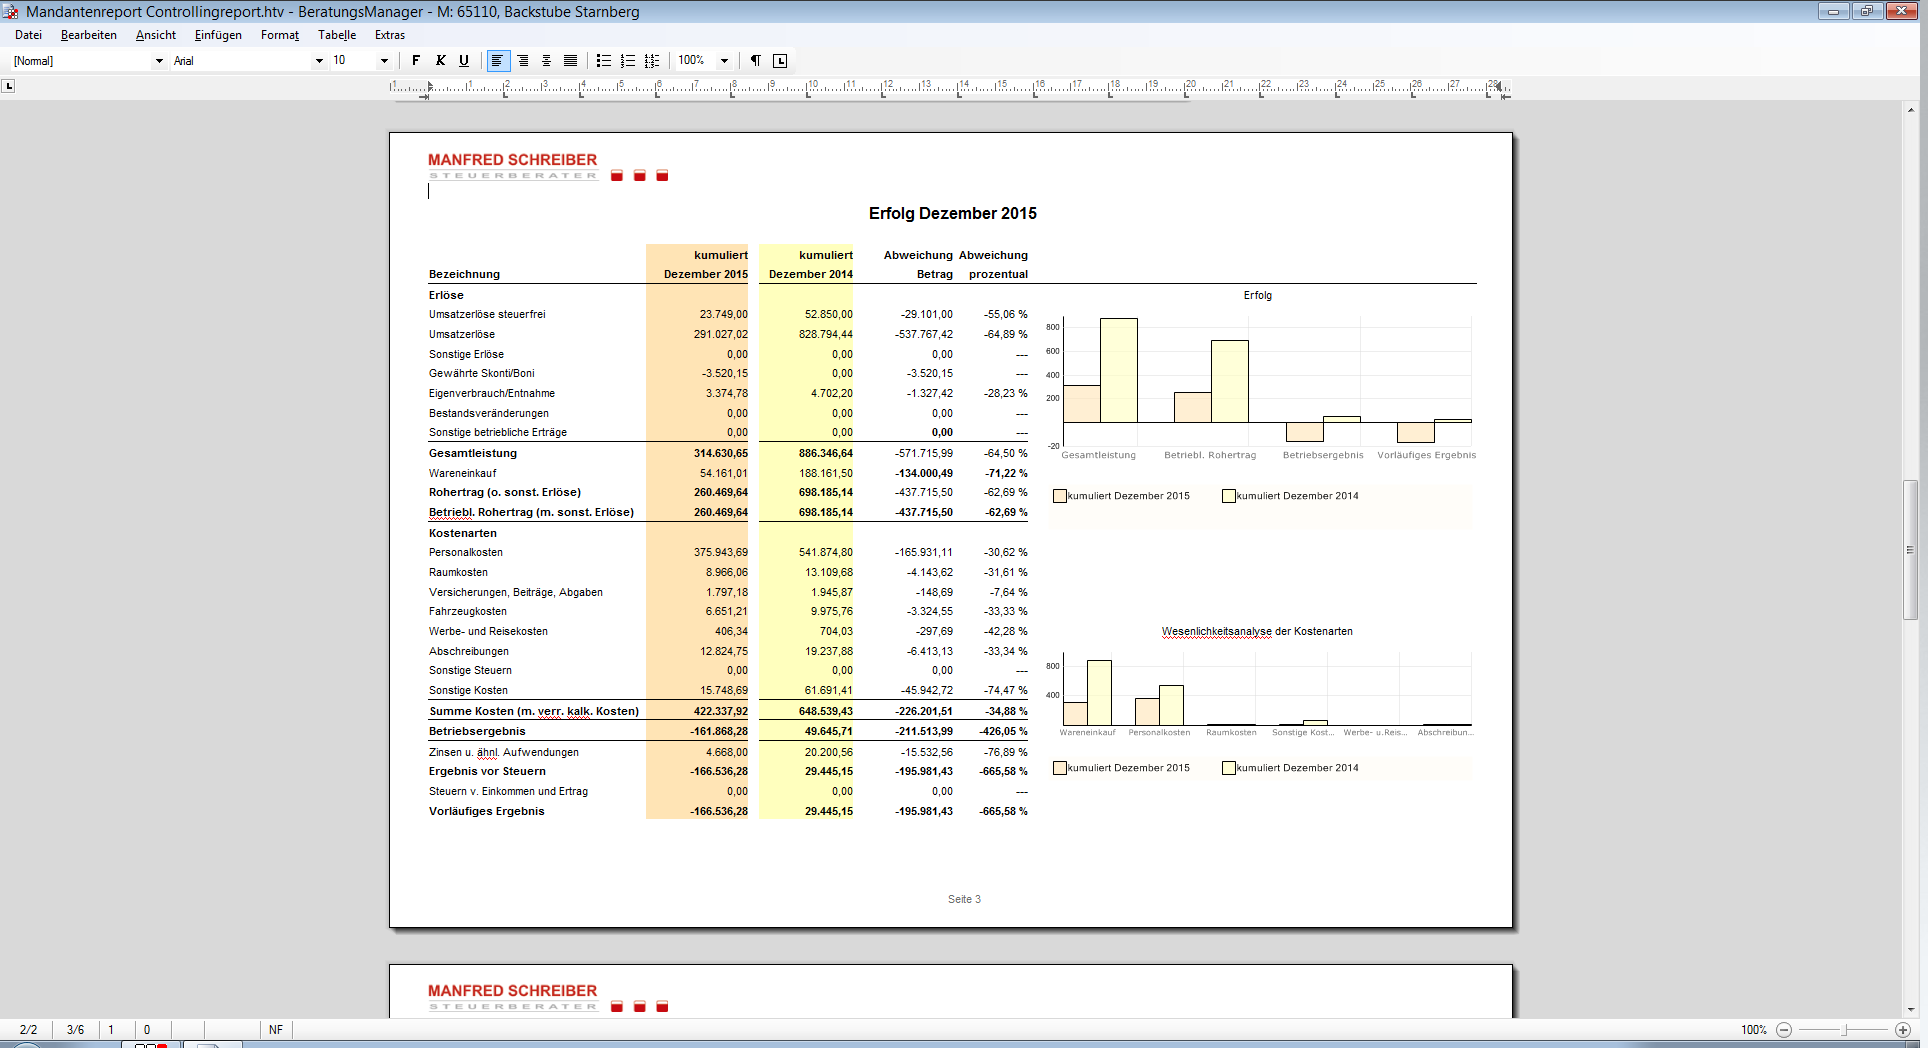 Rechnungswesen für Unternehmen - Controlling - Wirtschaftsberatung - Auswertungen - Controllingreport1